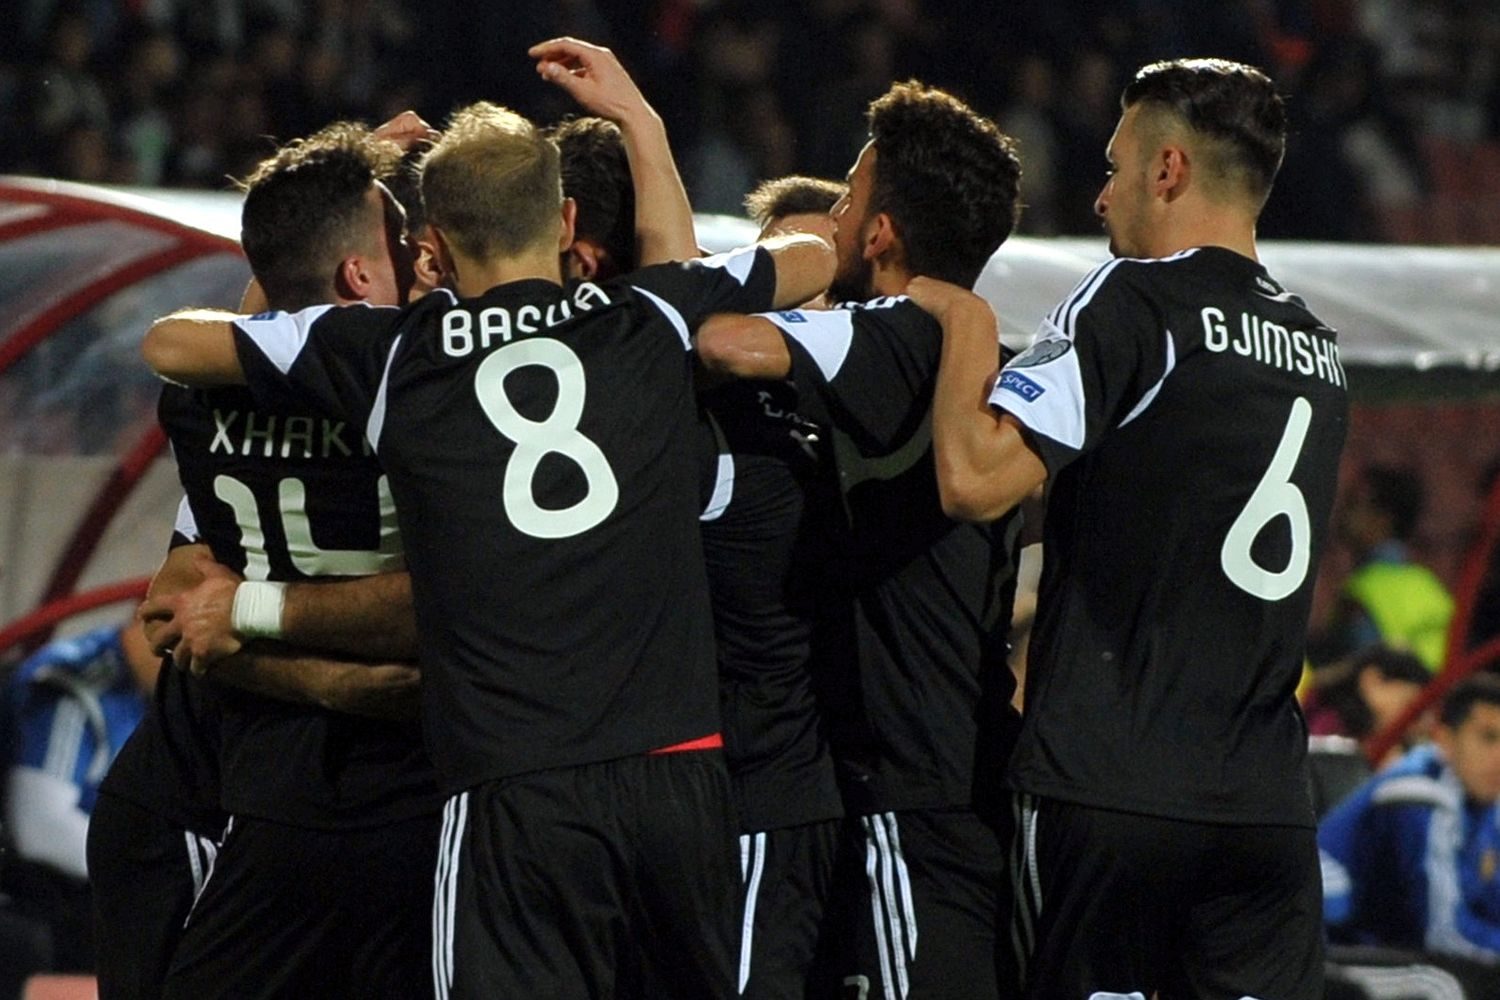 Albānijas futbola izlase līksmo par tikšanu finālturnīrā. Foto: UEFA.com